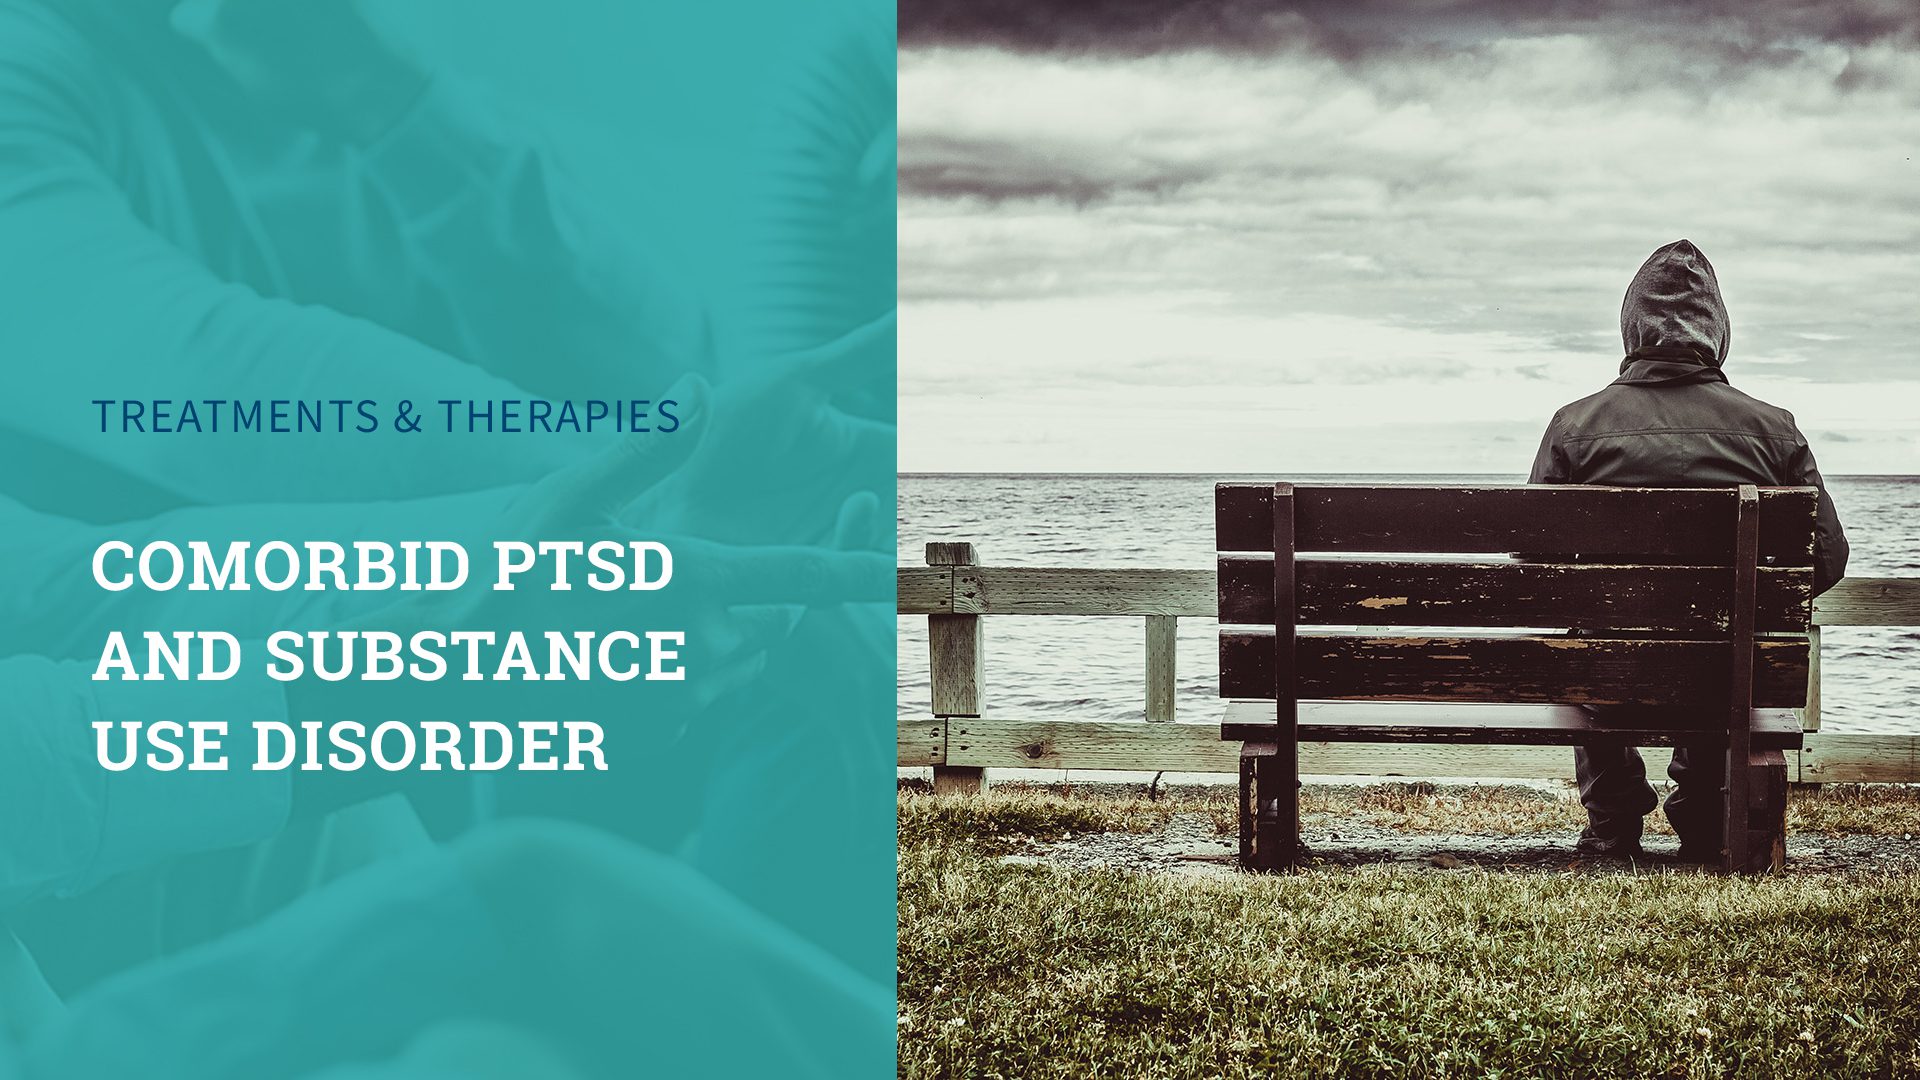 Comorbid PTSD and Substance Use Disorder